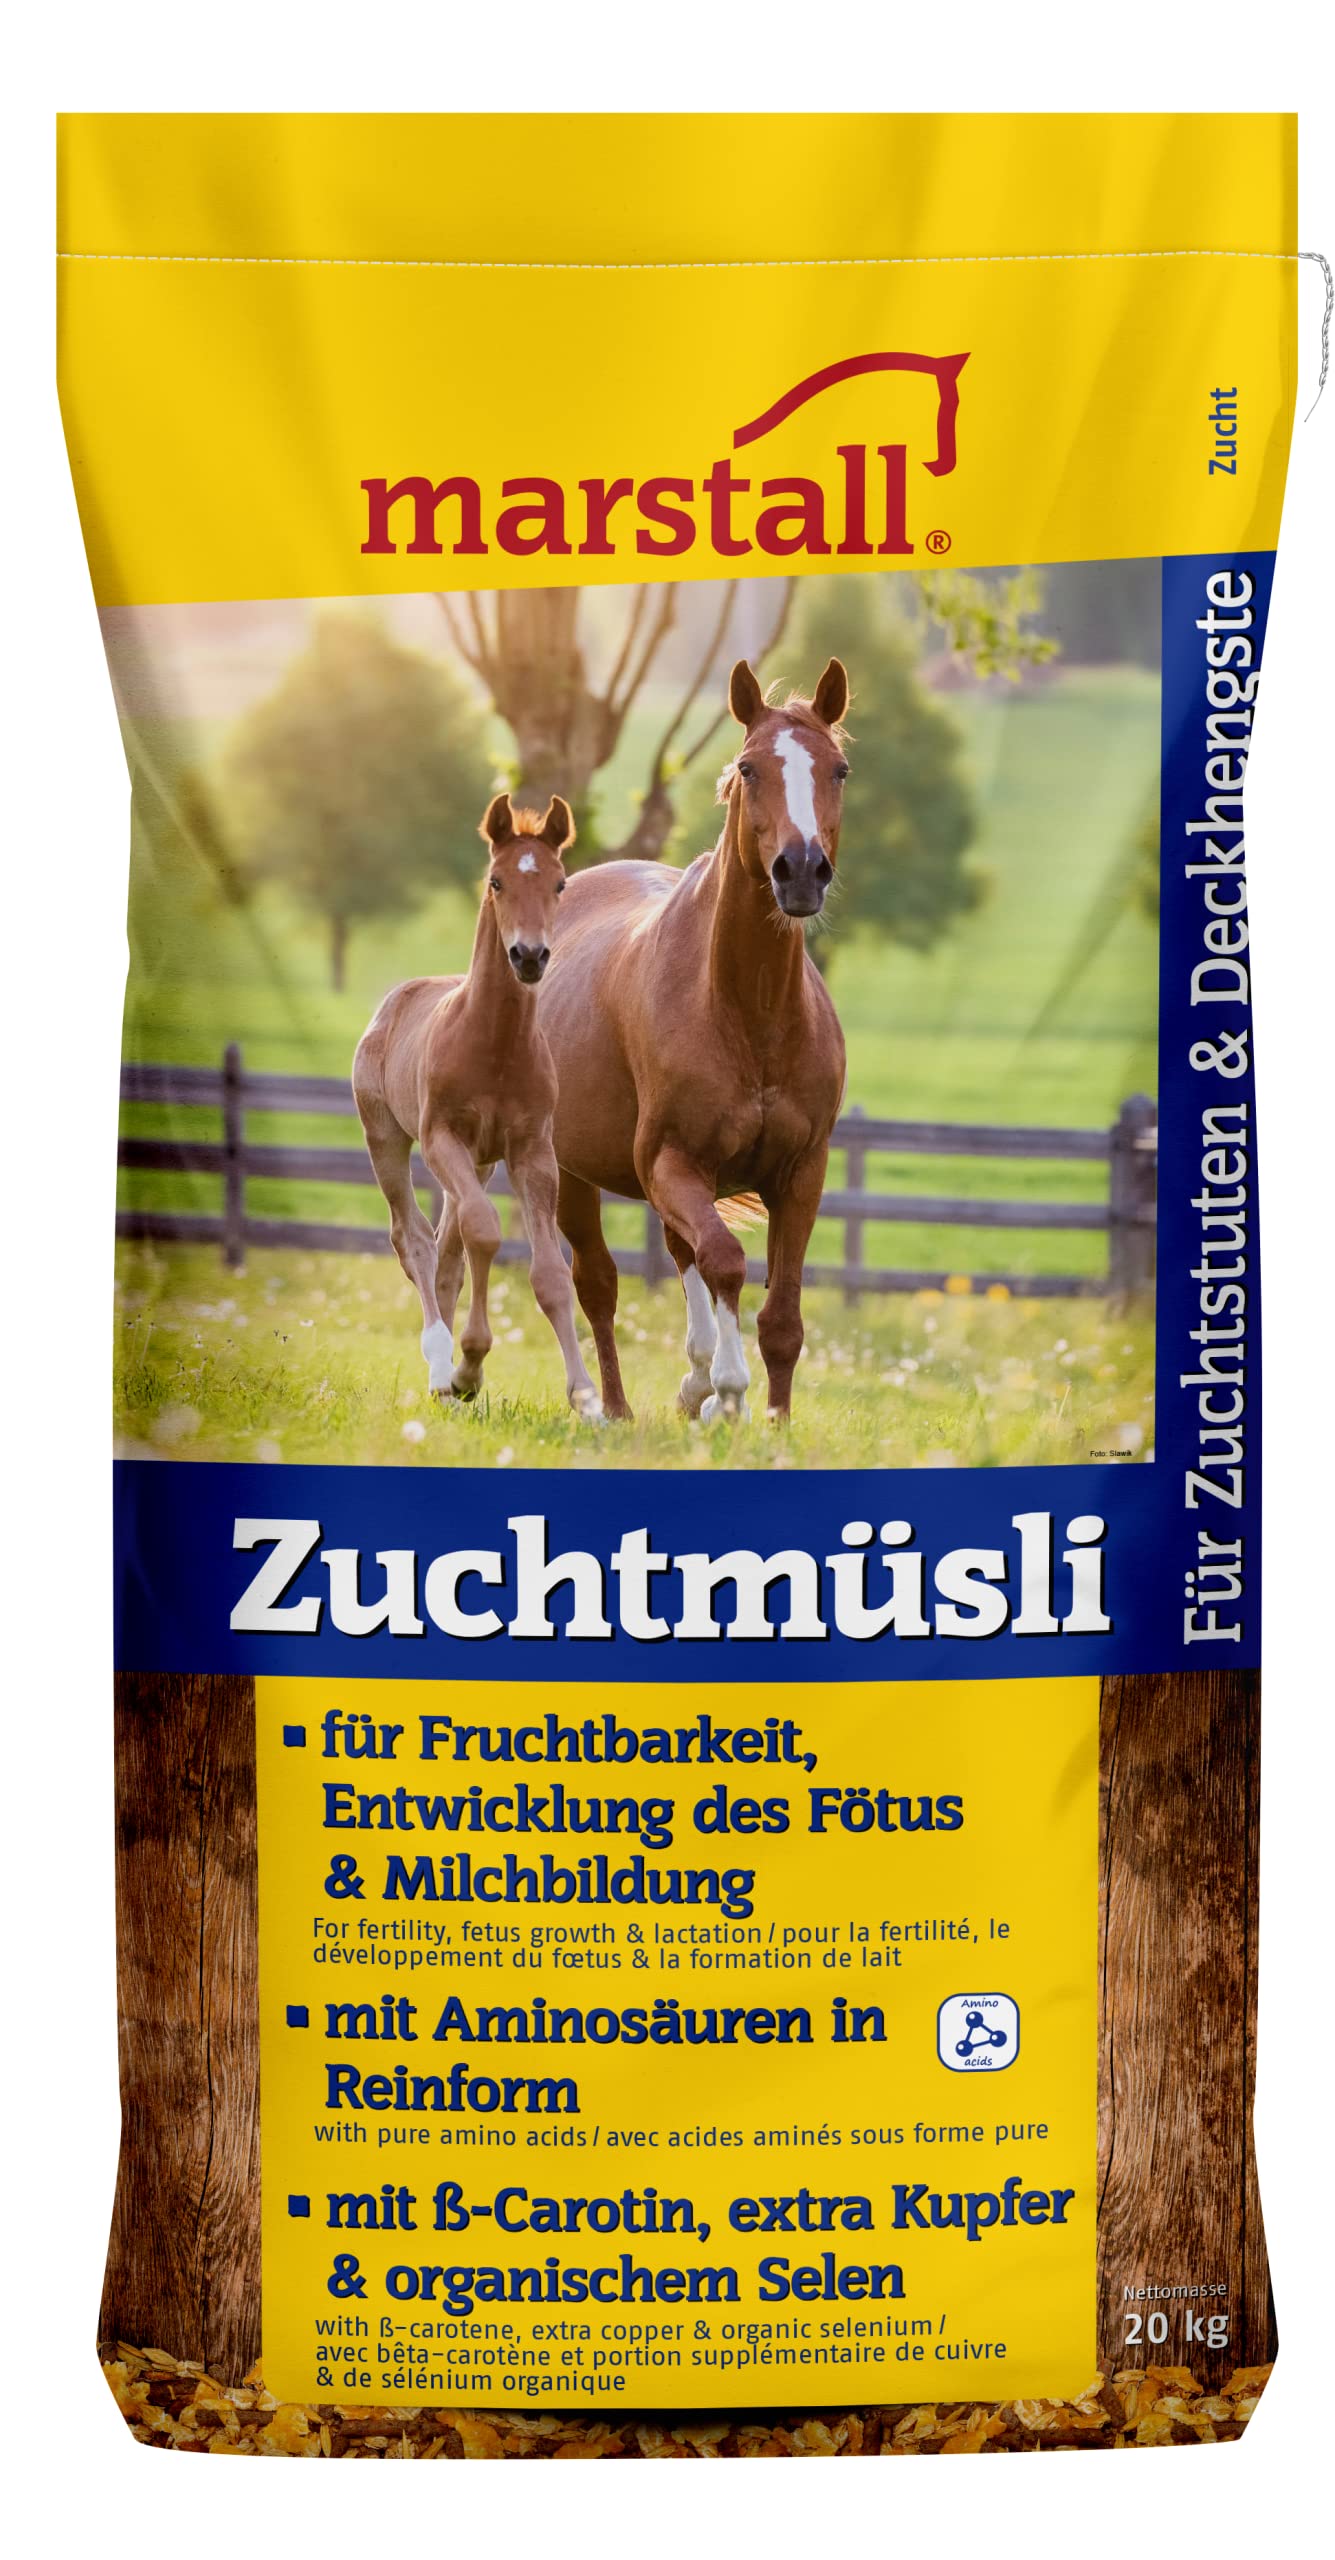 marstall Premium-Pferdefutter Zuchtmüsli, 1er Pack (1 x 20 kilograms)